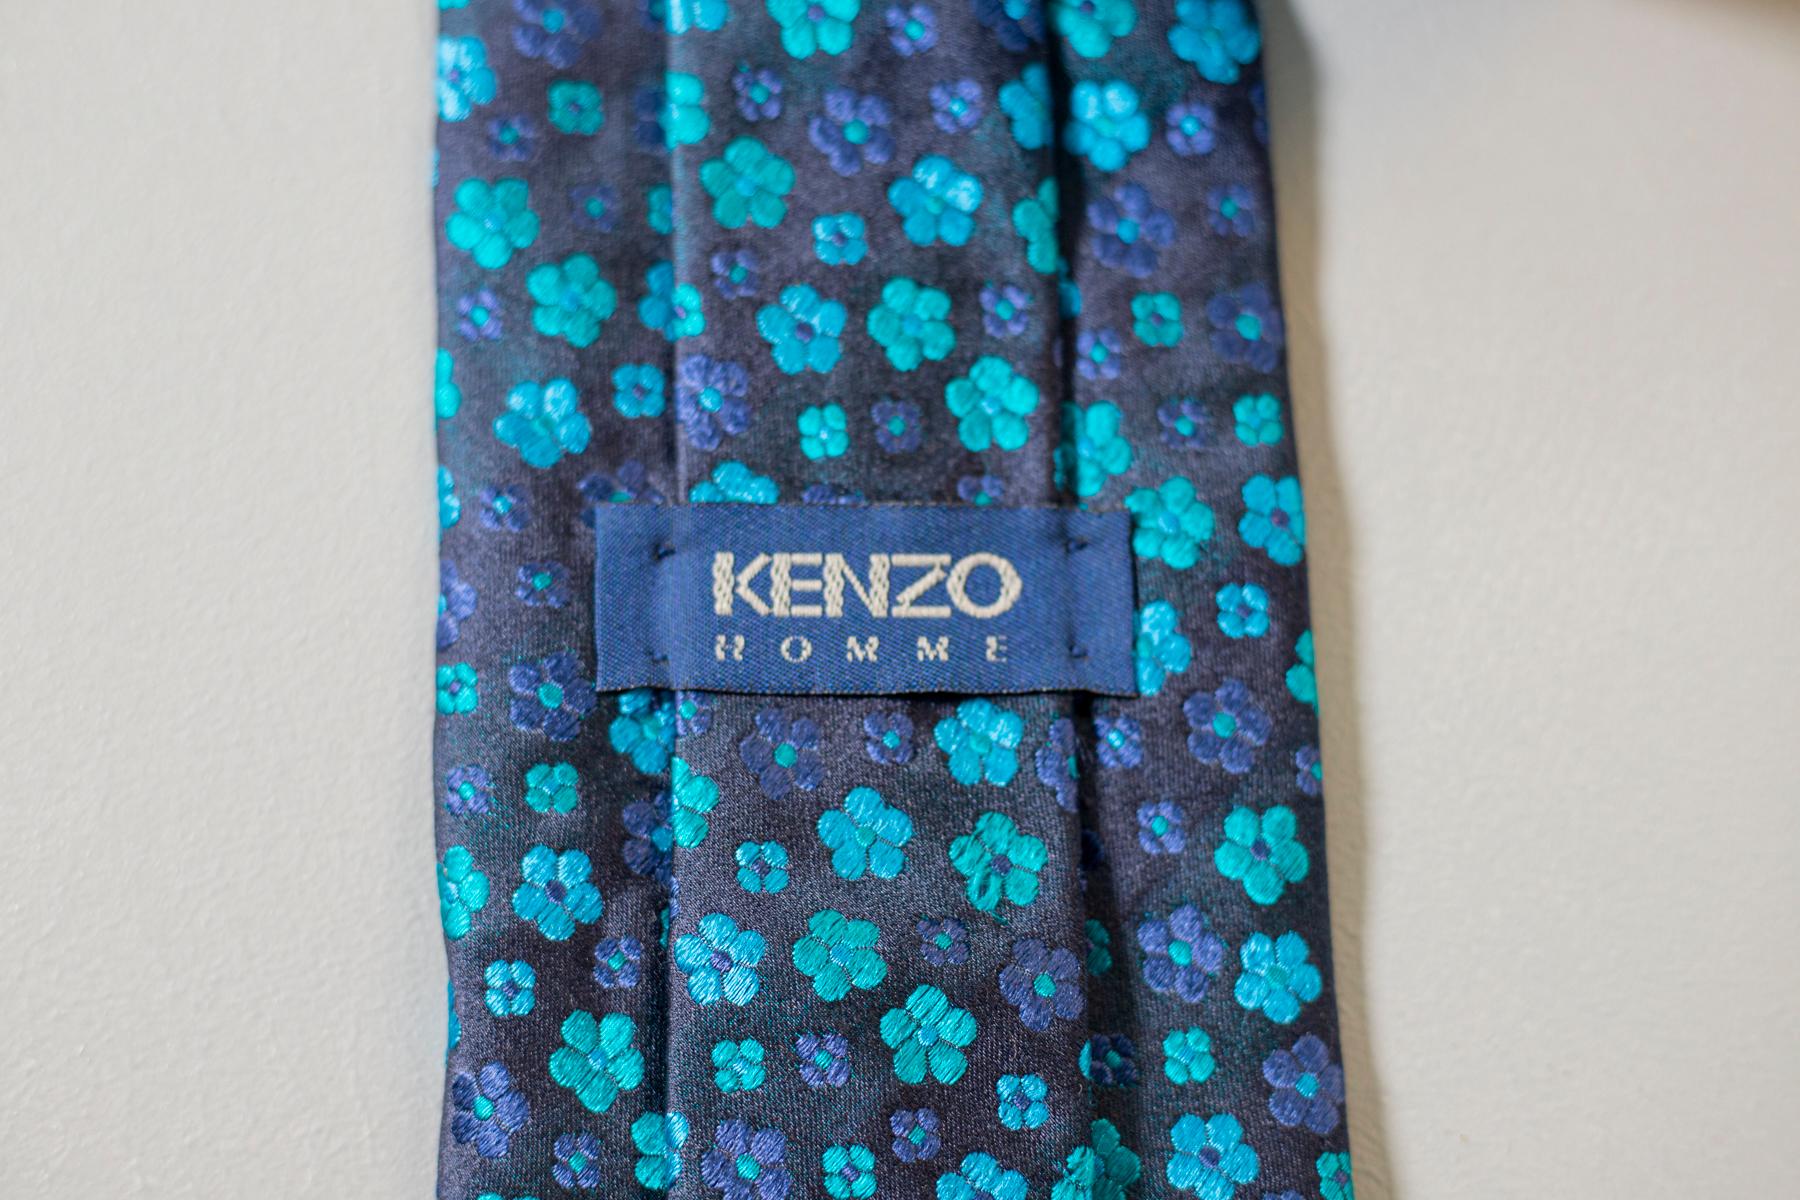 Diese Vintage-Krawatte ist im klassischen Stil von Kenzo gehalten. Diese Krawatte aus reiner Seide für die Kollektion Kenzo Homme ist mit kleinen blauen und hellblauen Blumen auf einem dunkelblauen Hintergrund verziert. Dieses Accessoire ist perfekt